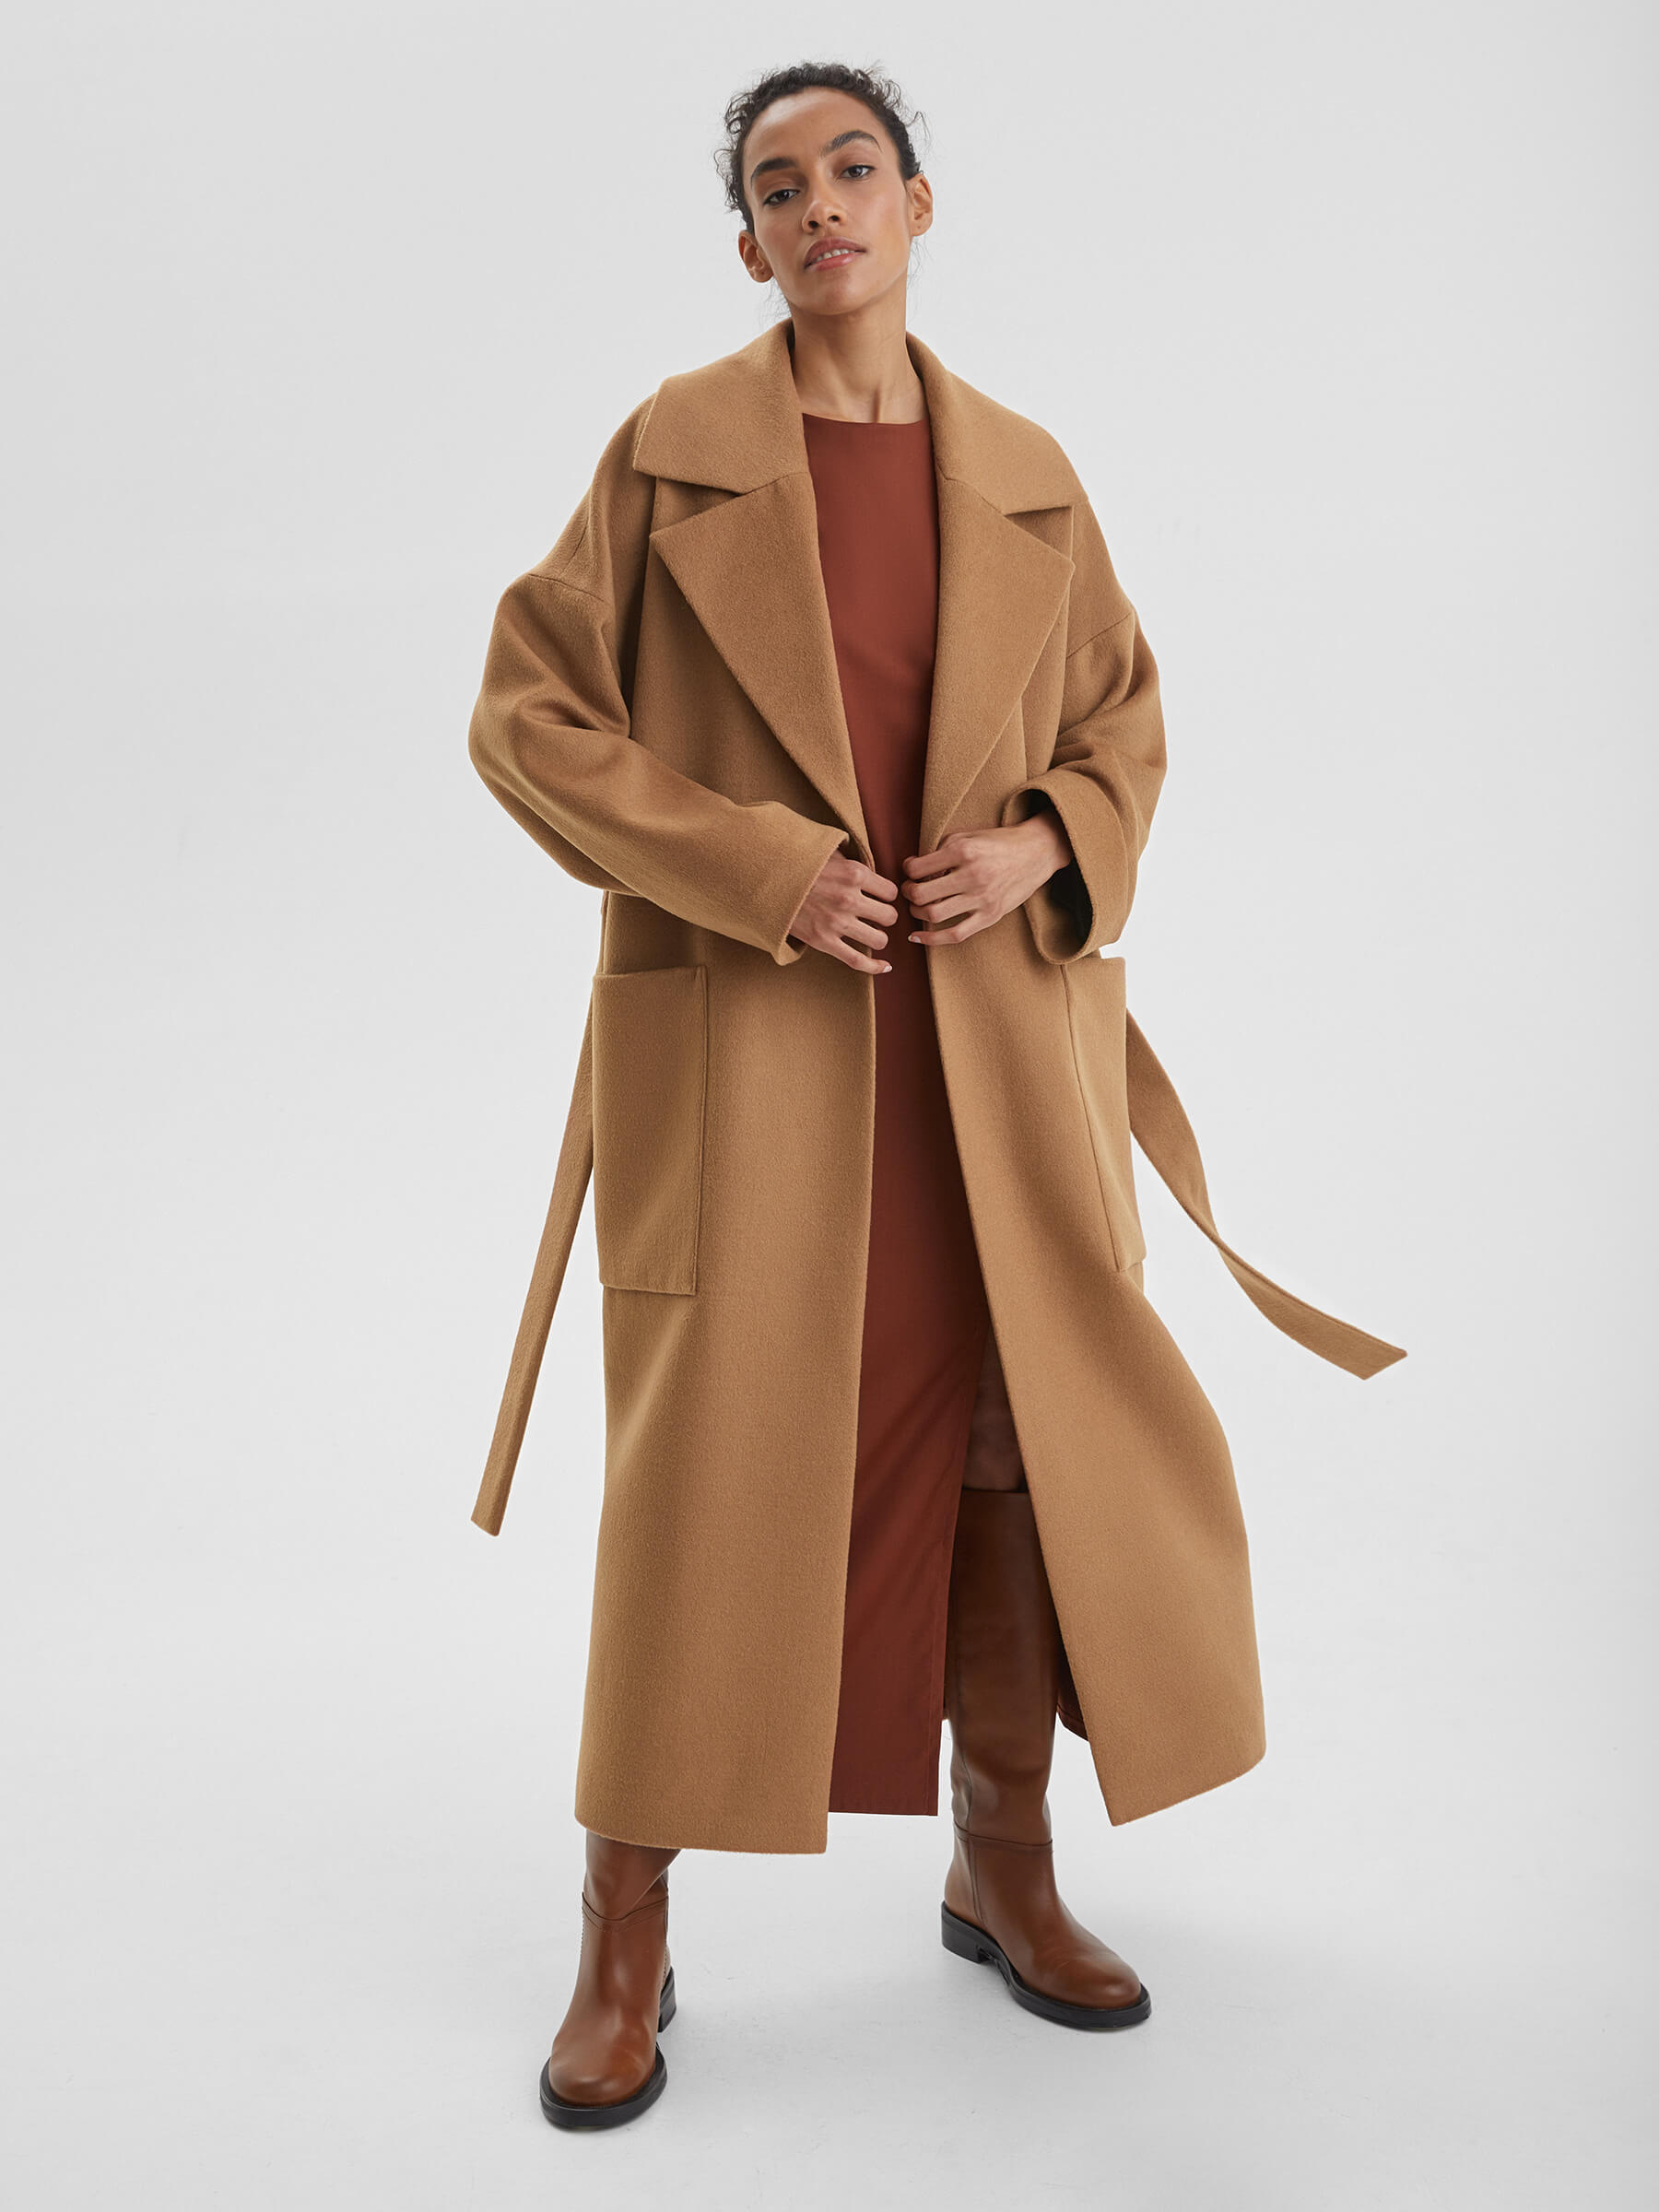 Пальто женское длинное с объемными карманами и поясом, цвет – кэмел женское шерстяное пальто с поясом теплое двубортное пальто средней длины с отложным воротником в корейском стиле осень зима 2021